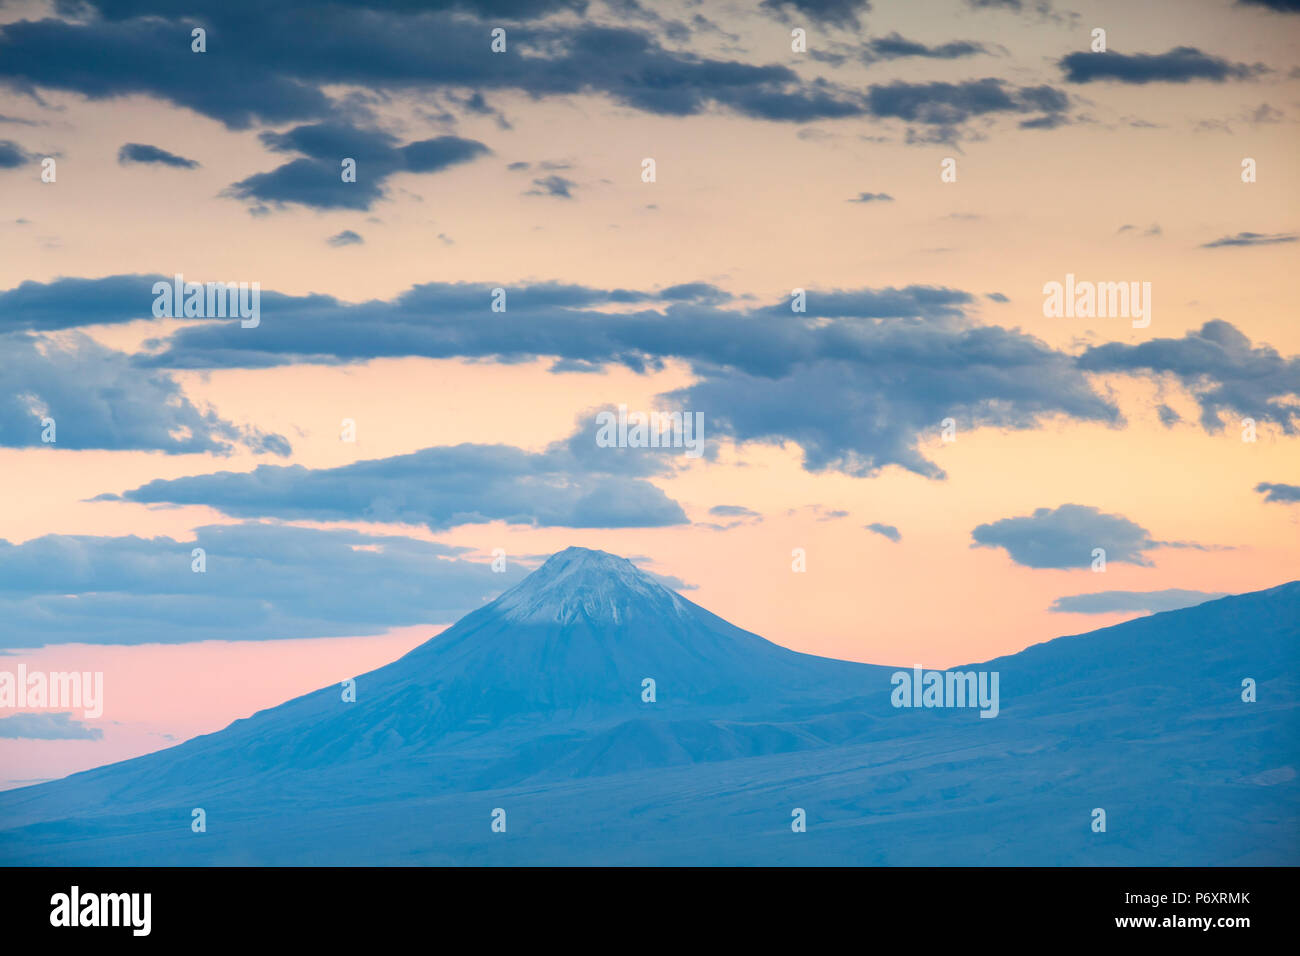 Armenia, Yerevan, View of Mount Ararat Stock Photo